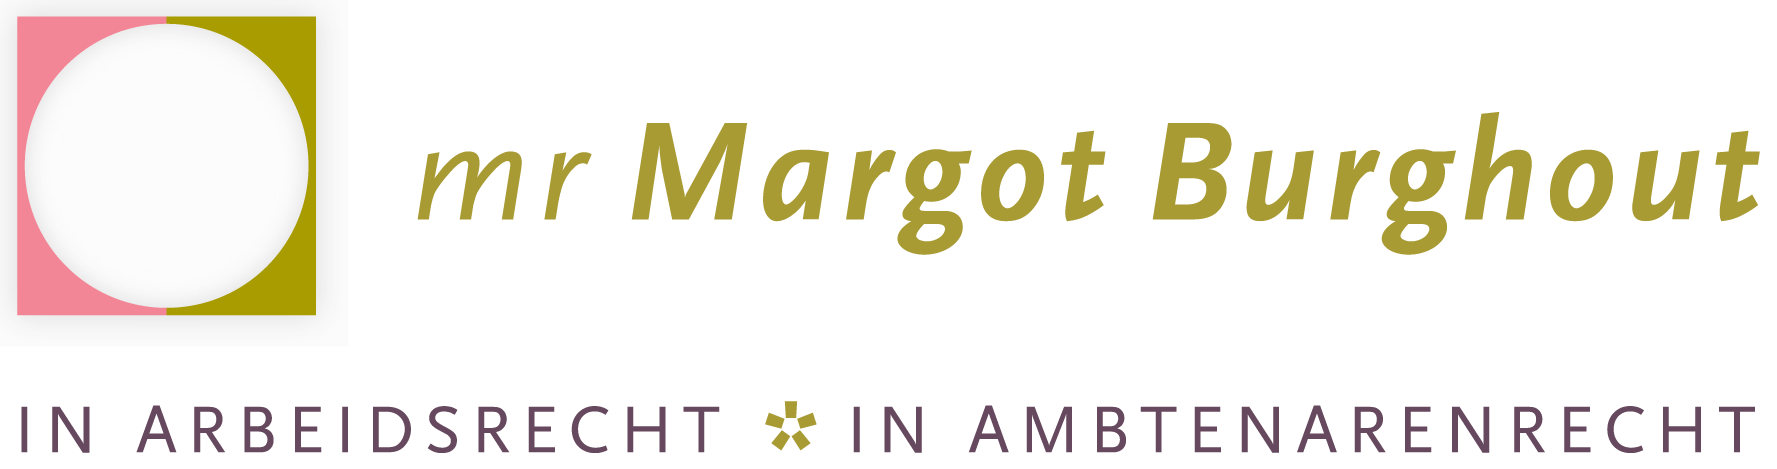 Margot-Burghout